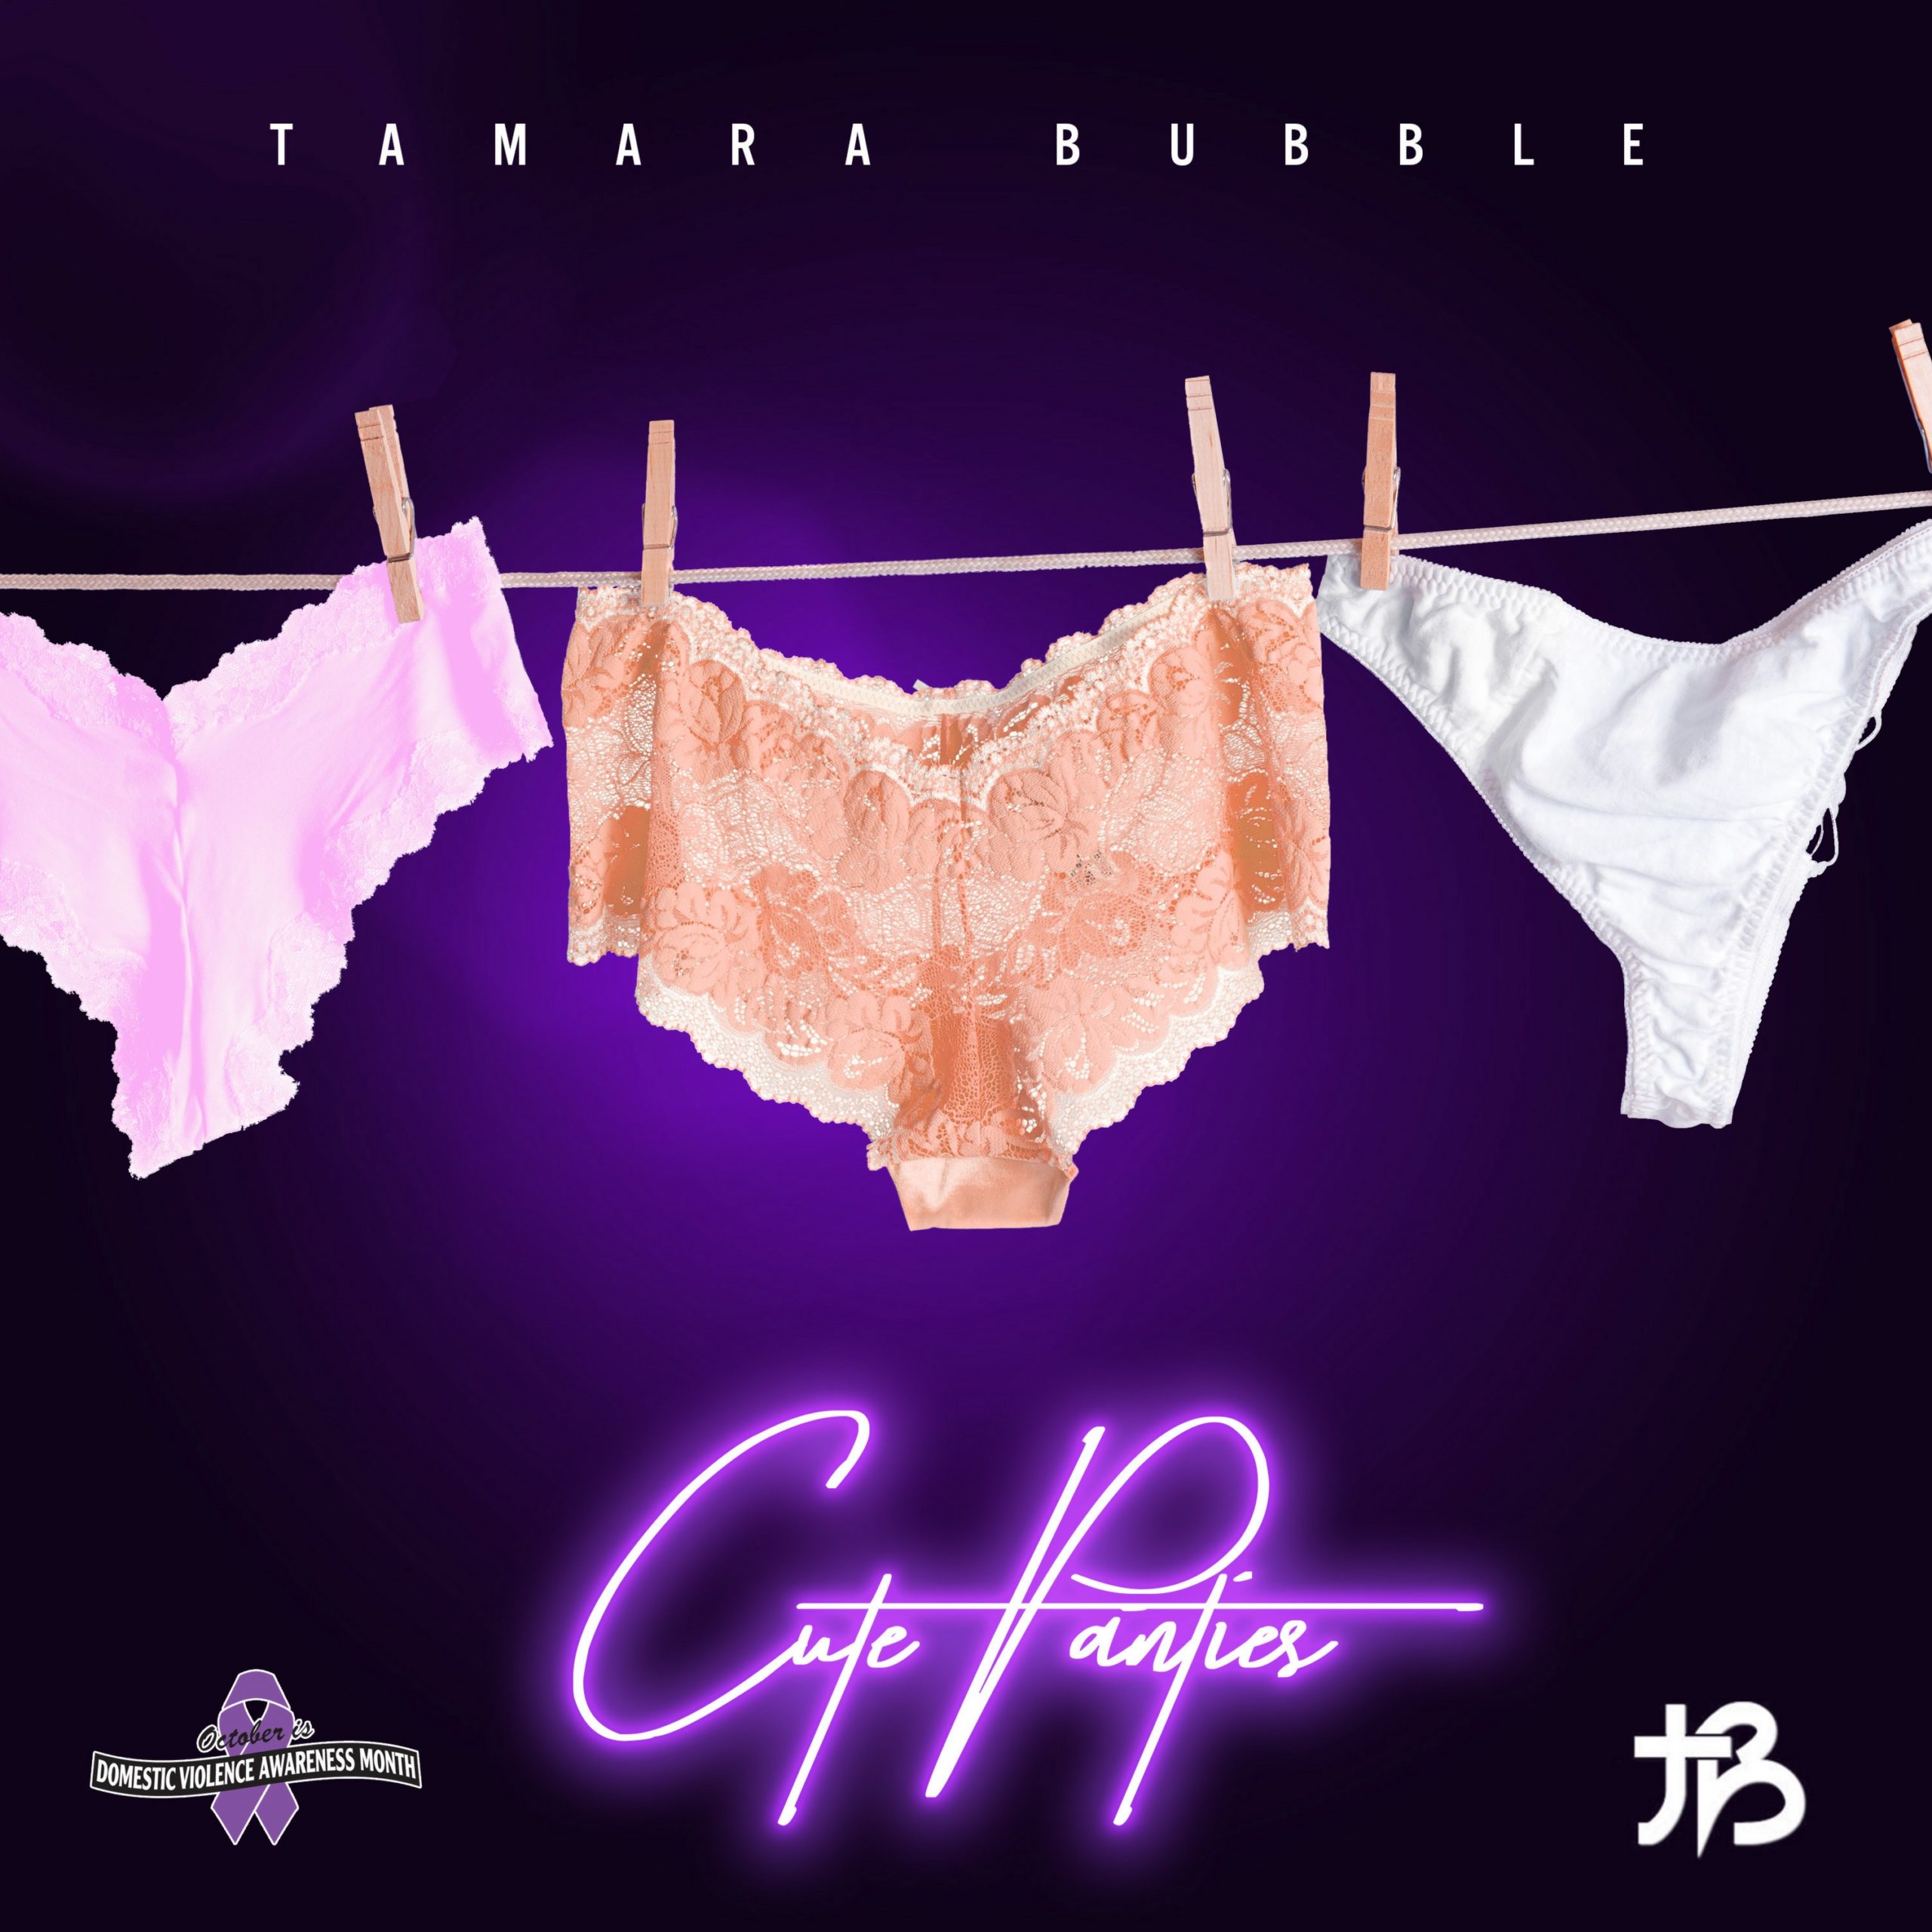 Tamara Bubble Got Bars In Her “Cute Panties”